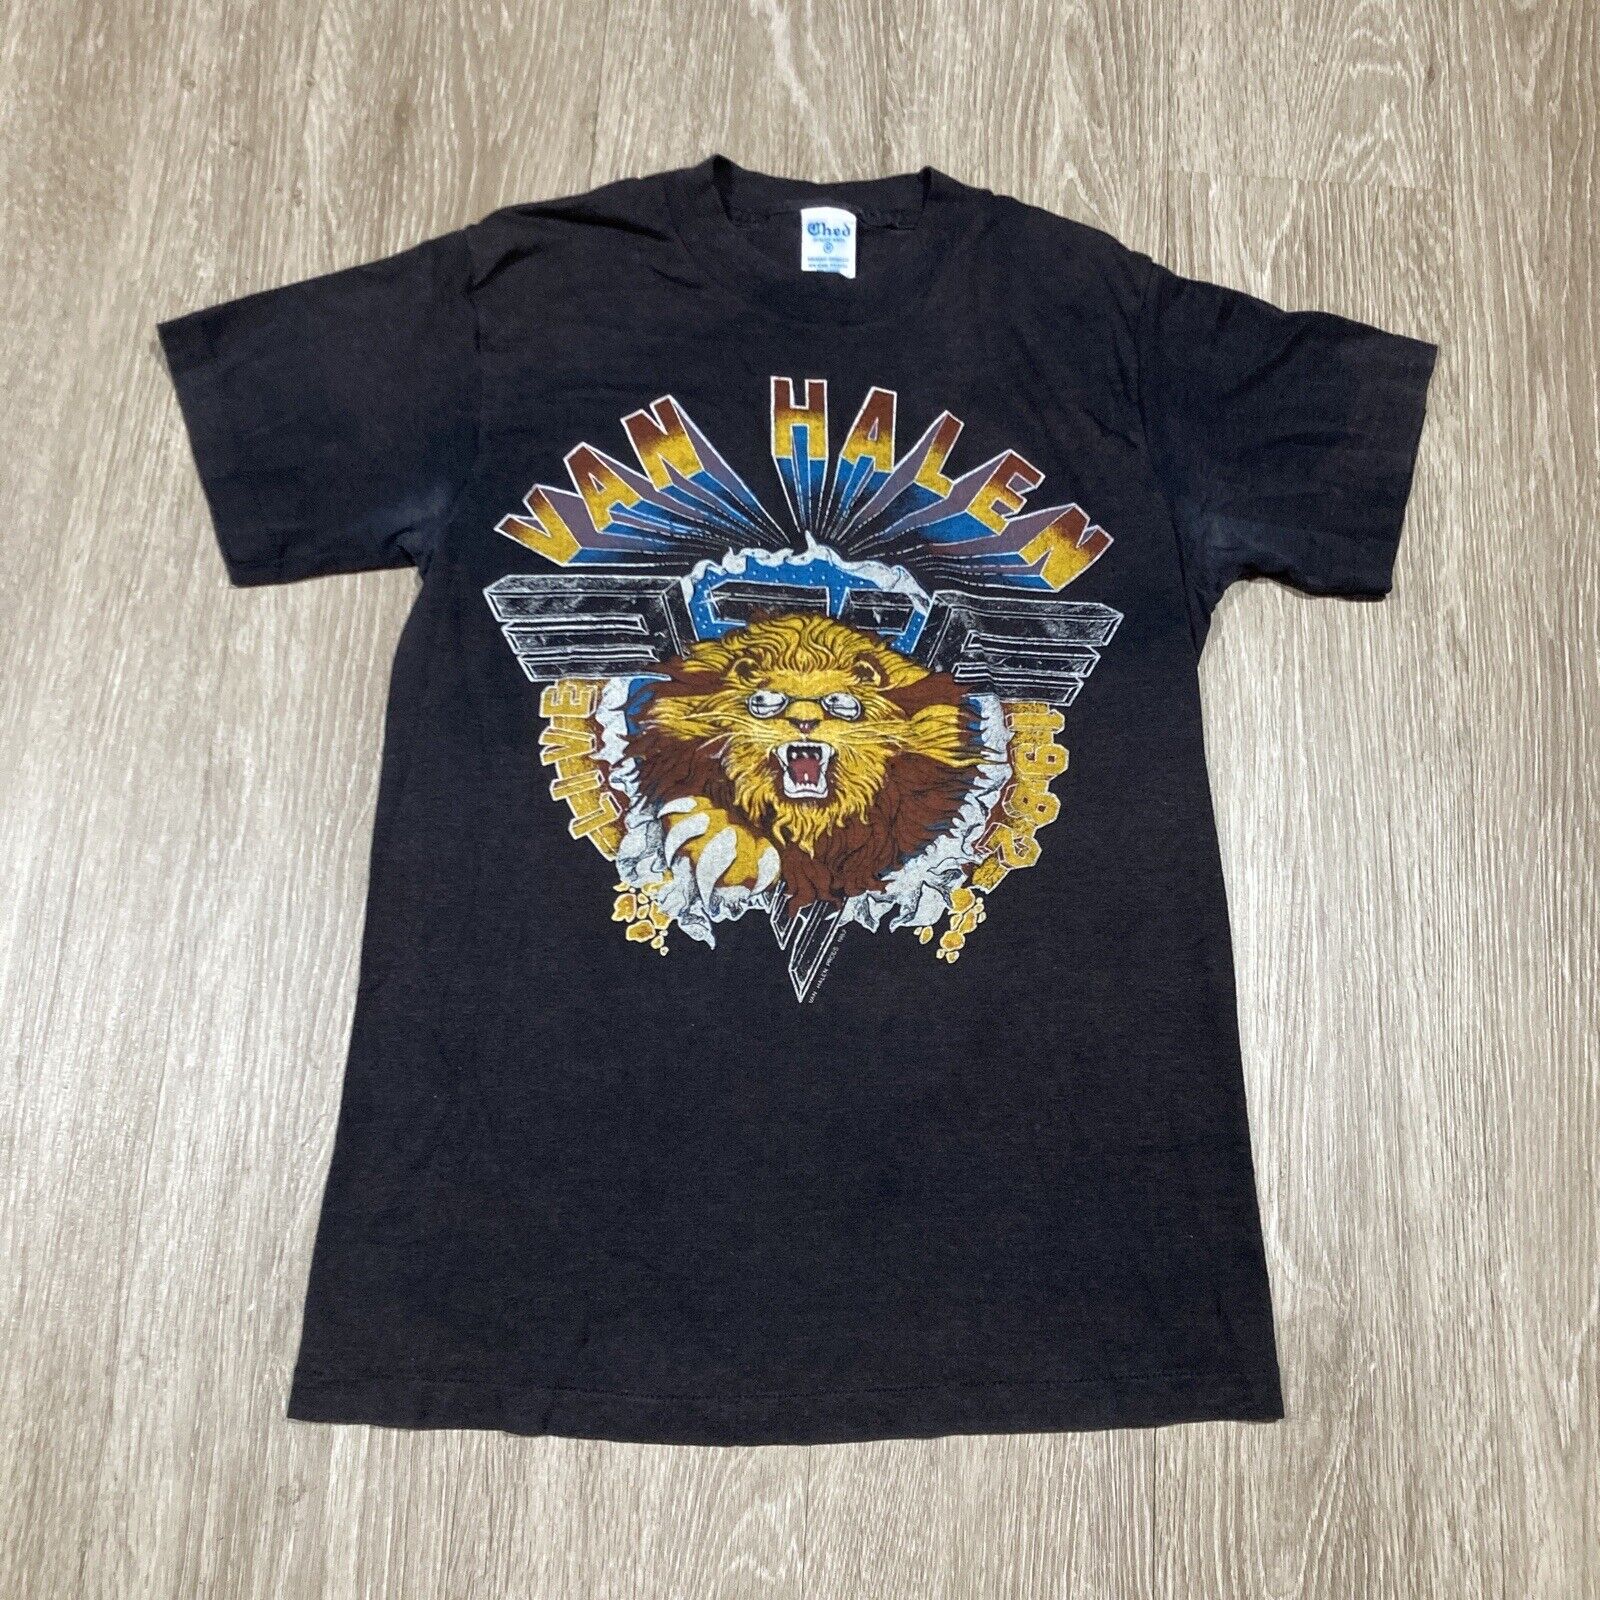 Van Halen Shirt M Vintage 80s Live Rock Band Concert Tour Album Grunge Lion Tee